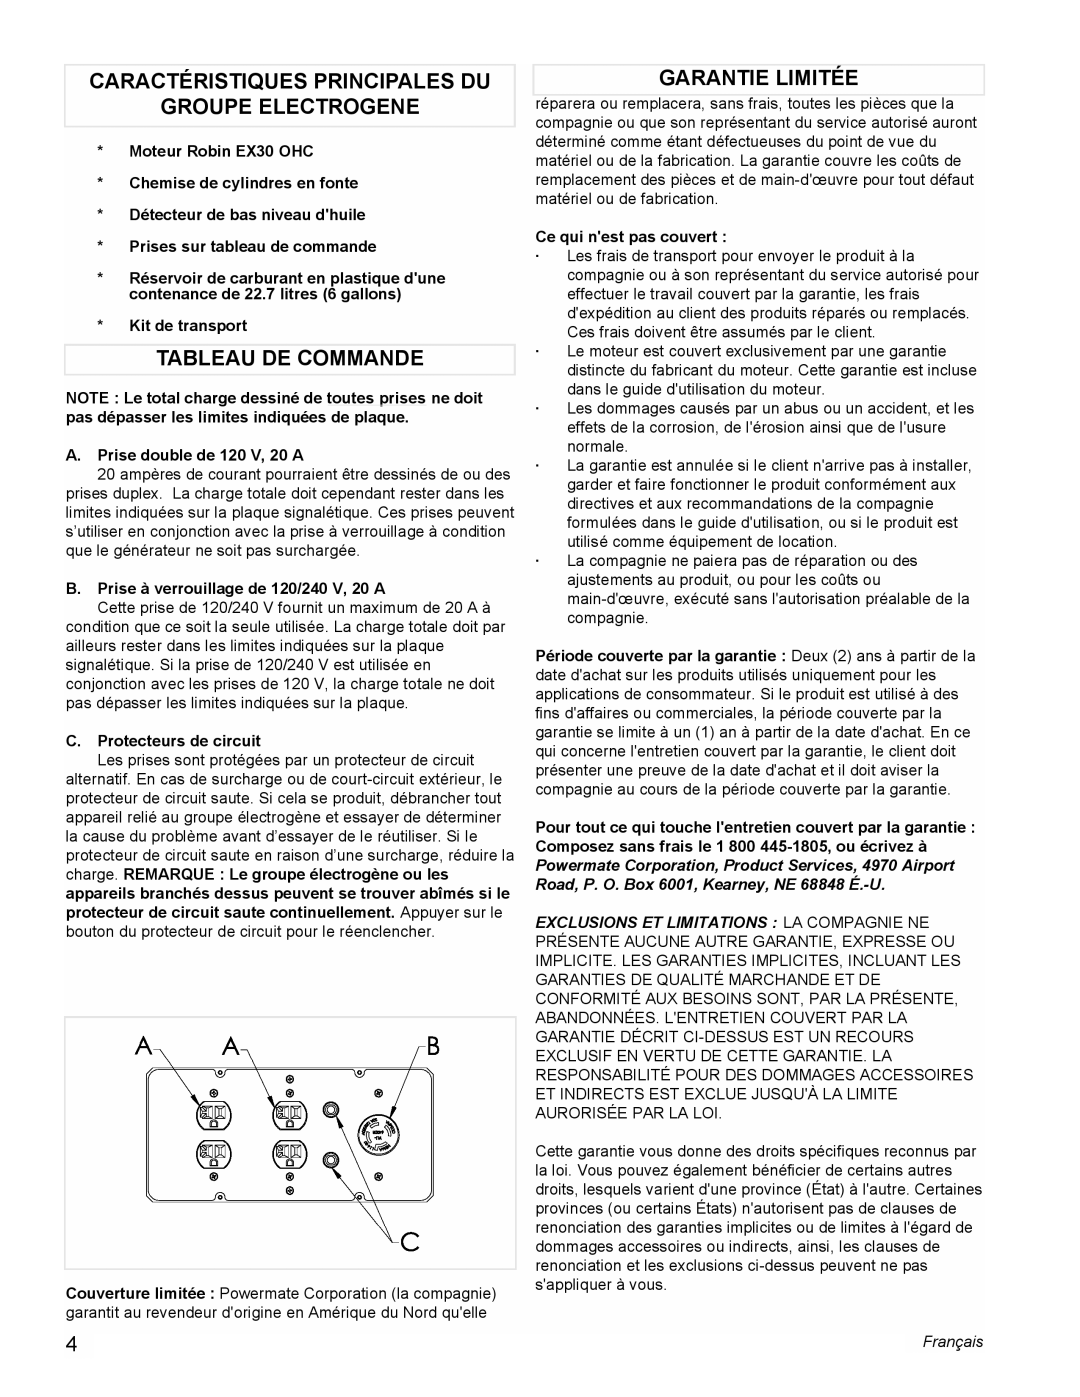 Coleman PM0435005 Caractéristiques Principales Du, Groupe Electrogene, Tableau De Commande, Garantie Limitée, Français 